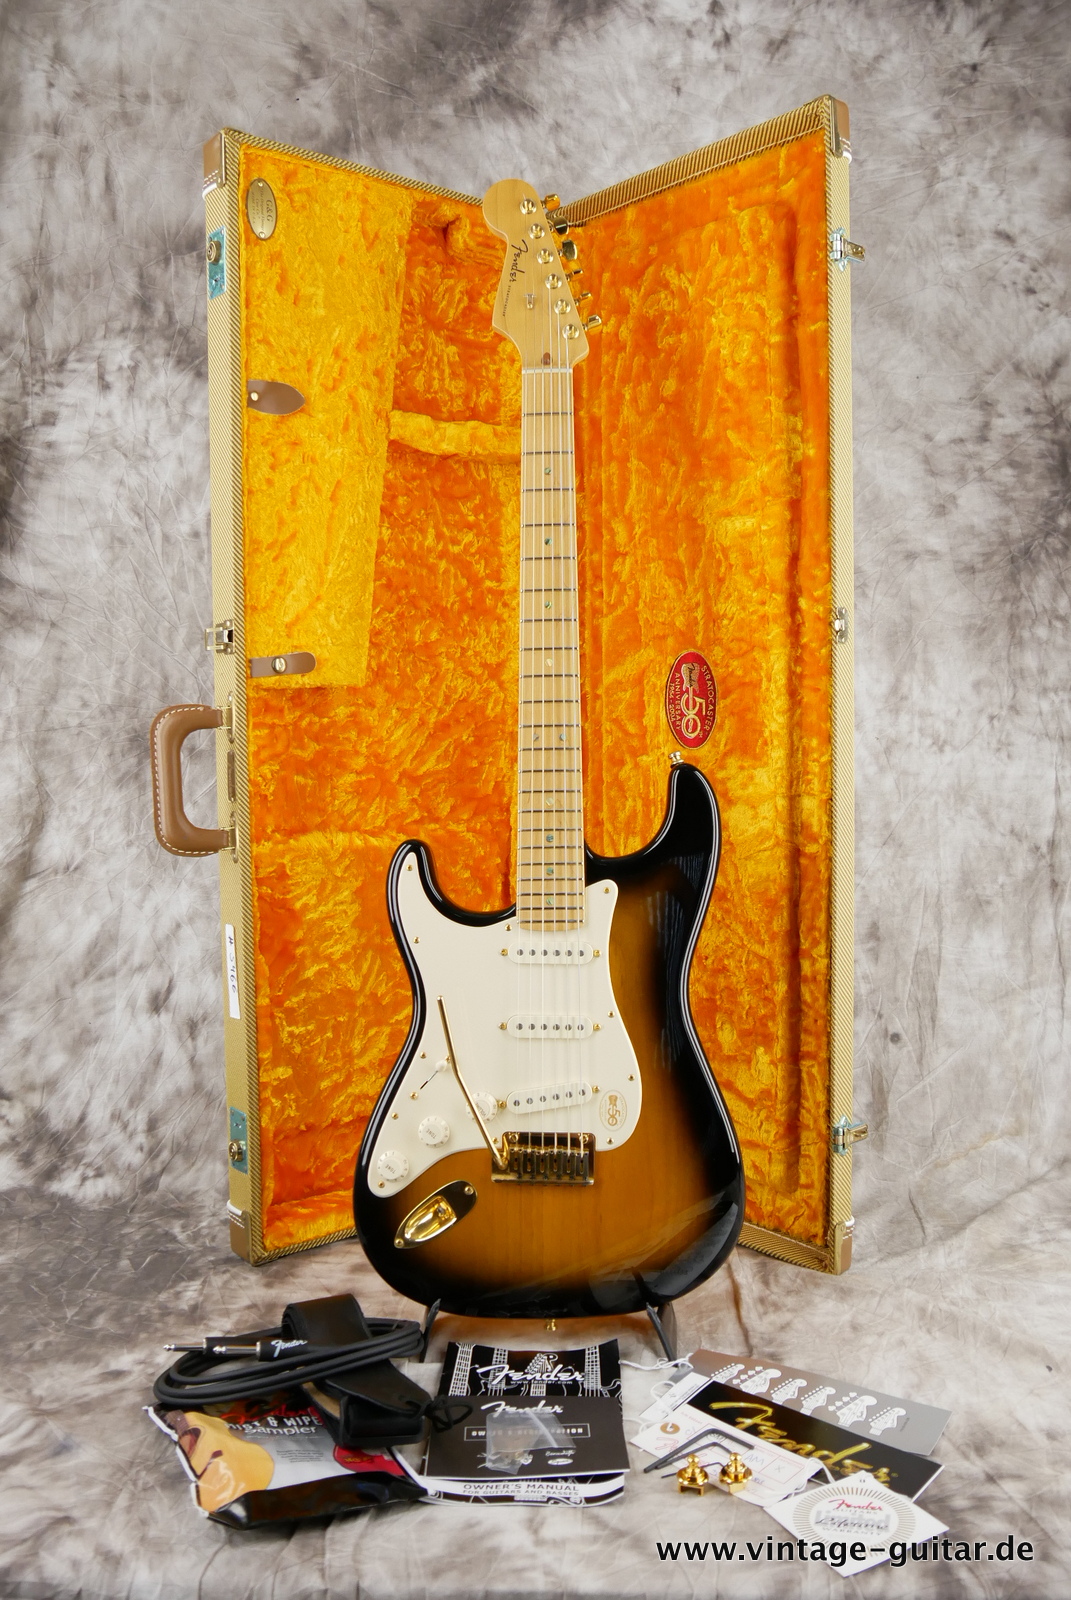 Fender_Stratocaster_deluxe_50th_anniversary__left_hand_sunburst_tweed_case_2004-022.JPG